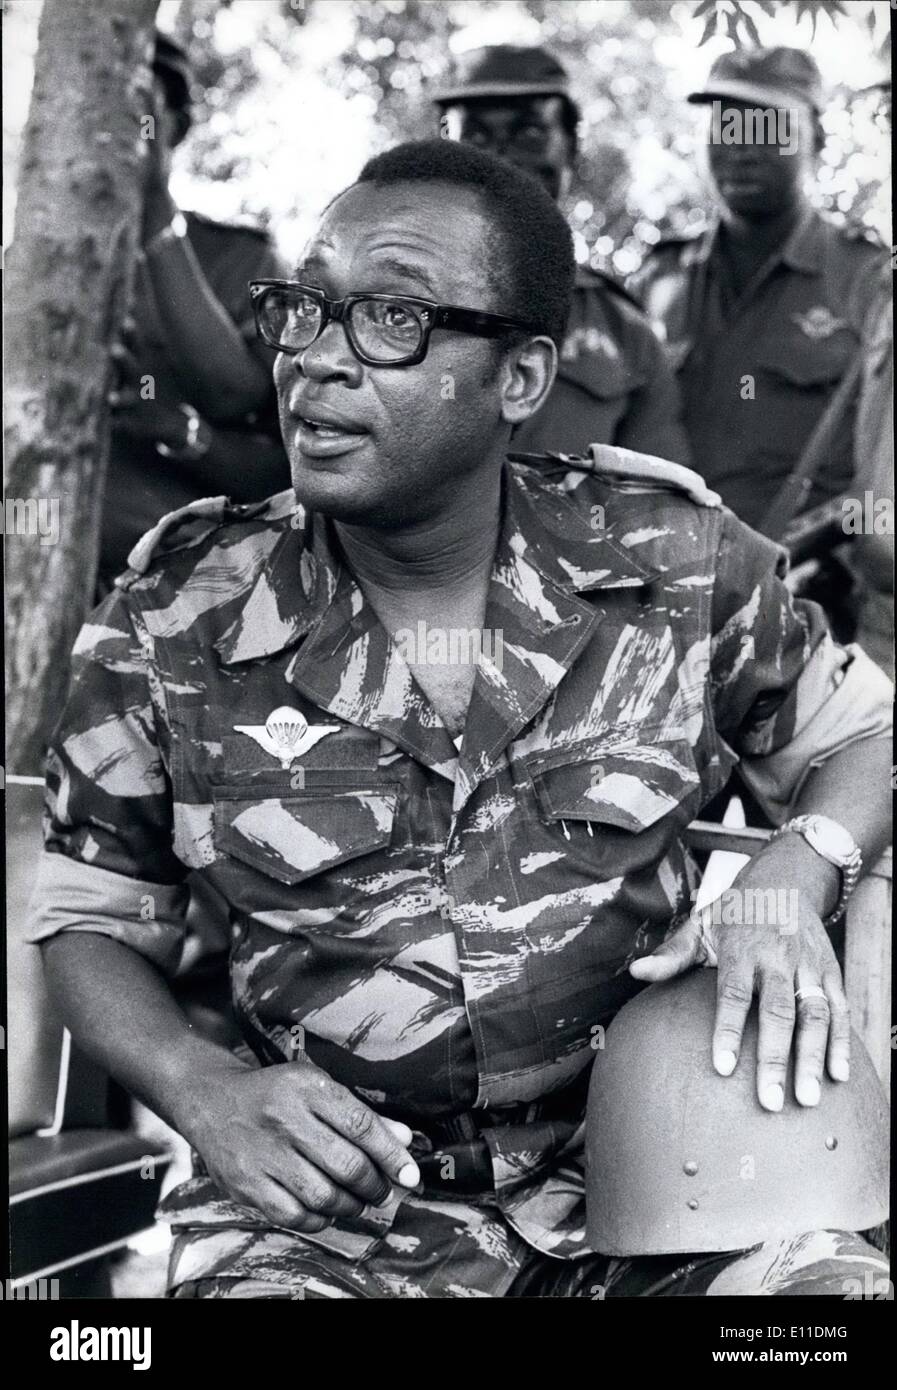 Mai 05, 1977 - Zaïre : Le Président Mobutu Sese Seko dans sa tenue de combat commandant la guerre dans la province de Shaba. Banque D'Images